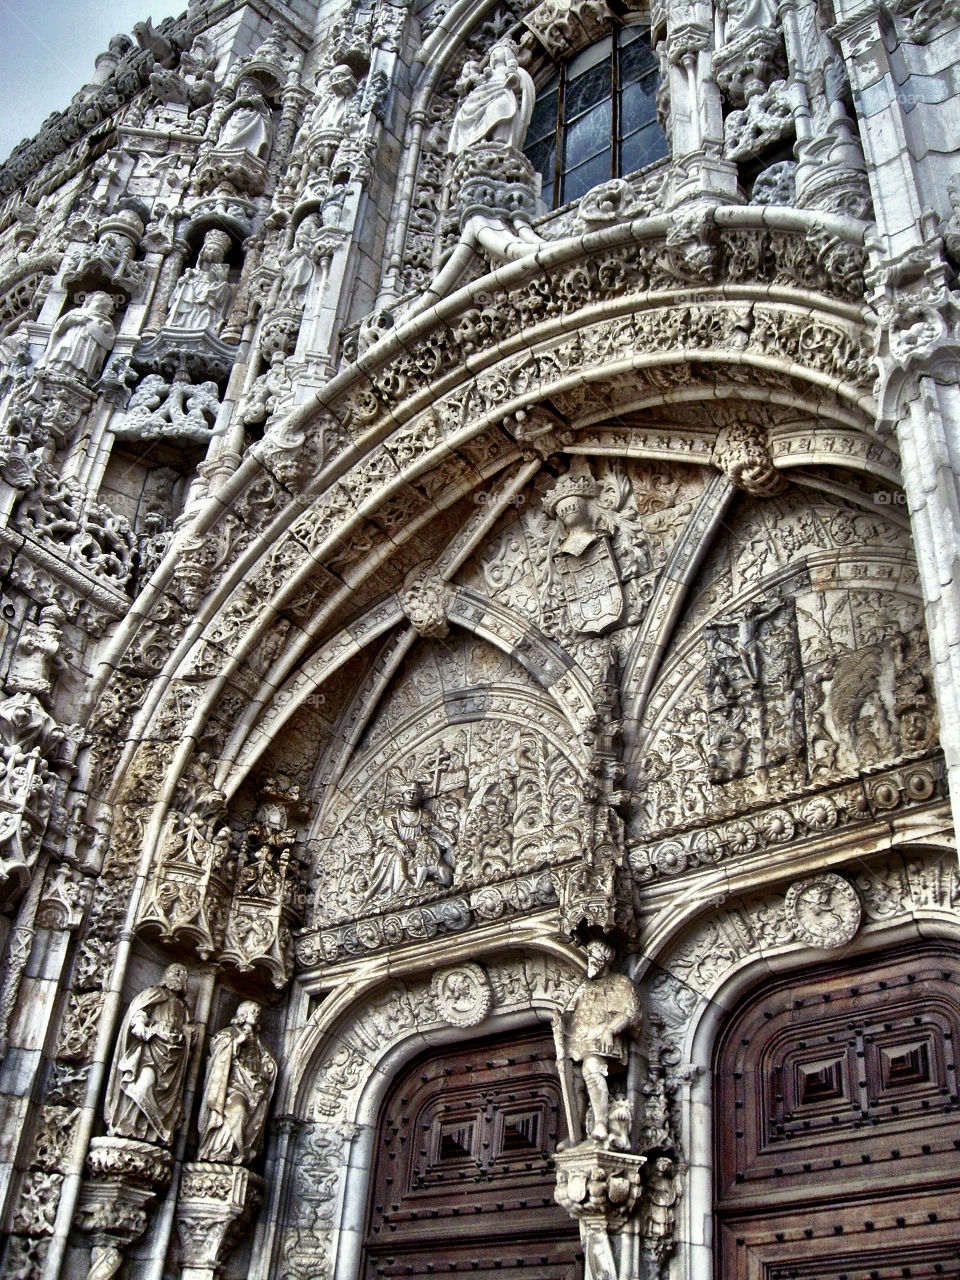 Detalle Portada Meridional del Monasterio de los Jerónimos de Belem. Detalle Portada Meridional del Monasterio de los Jerónimos de Belem (Lisboa - Portugal)